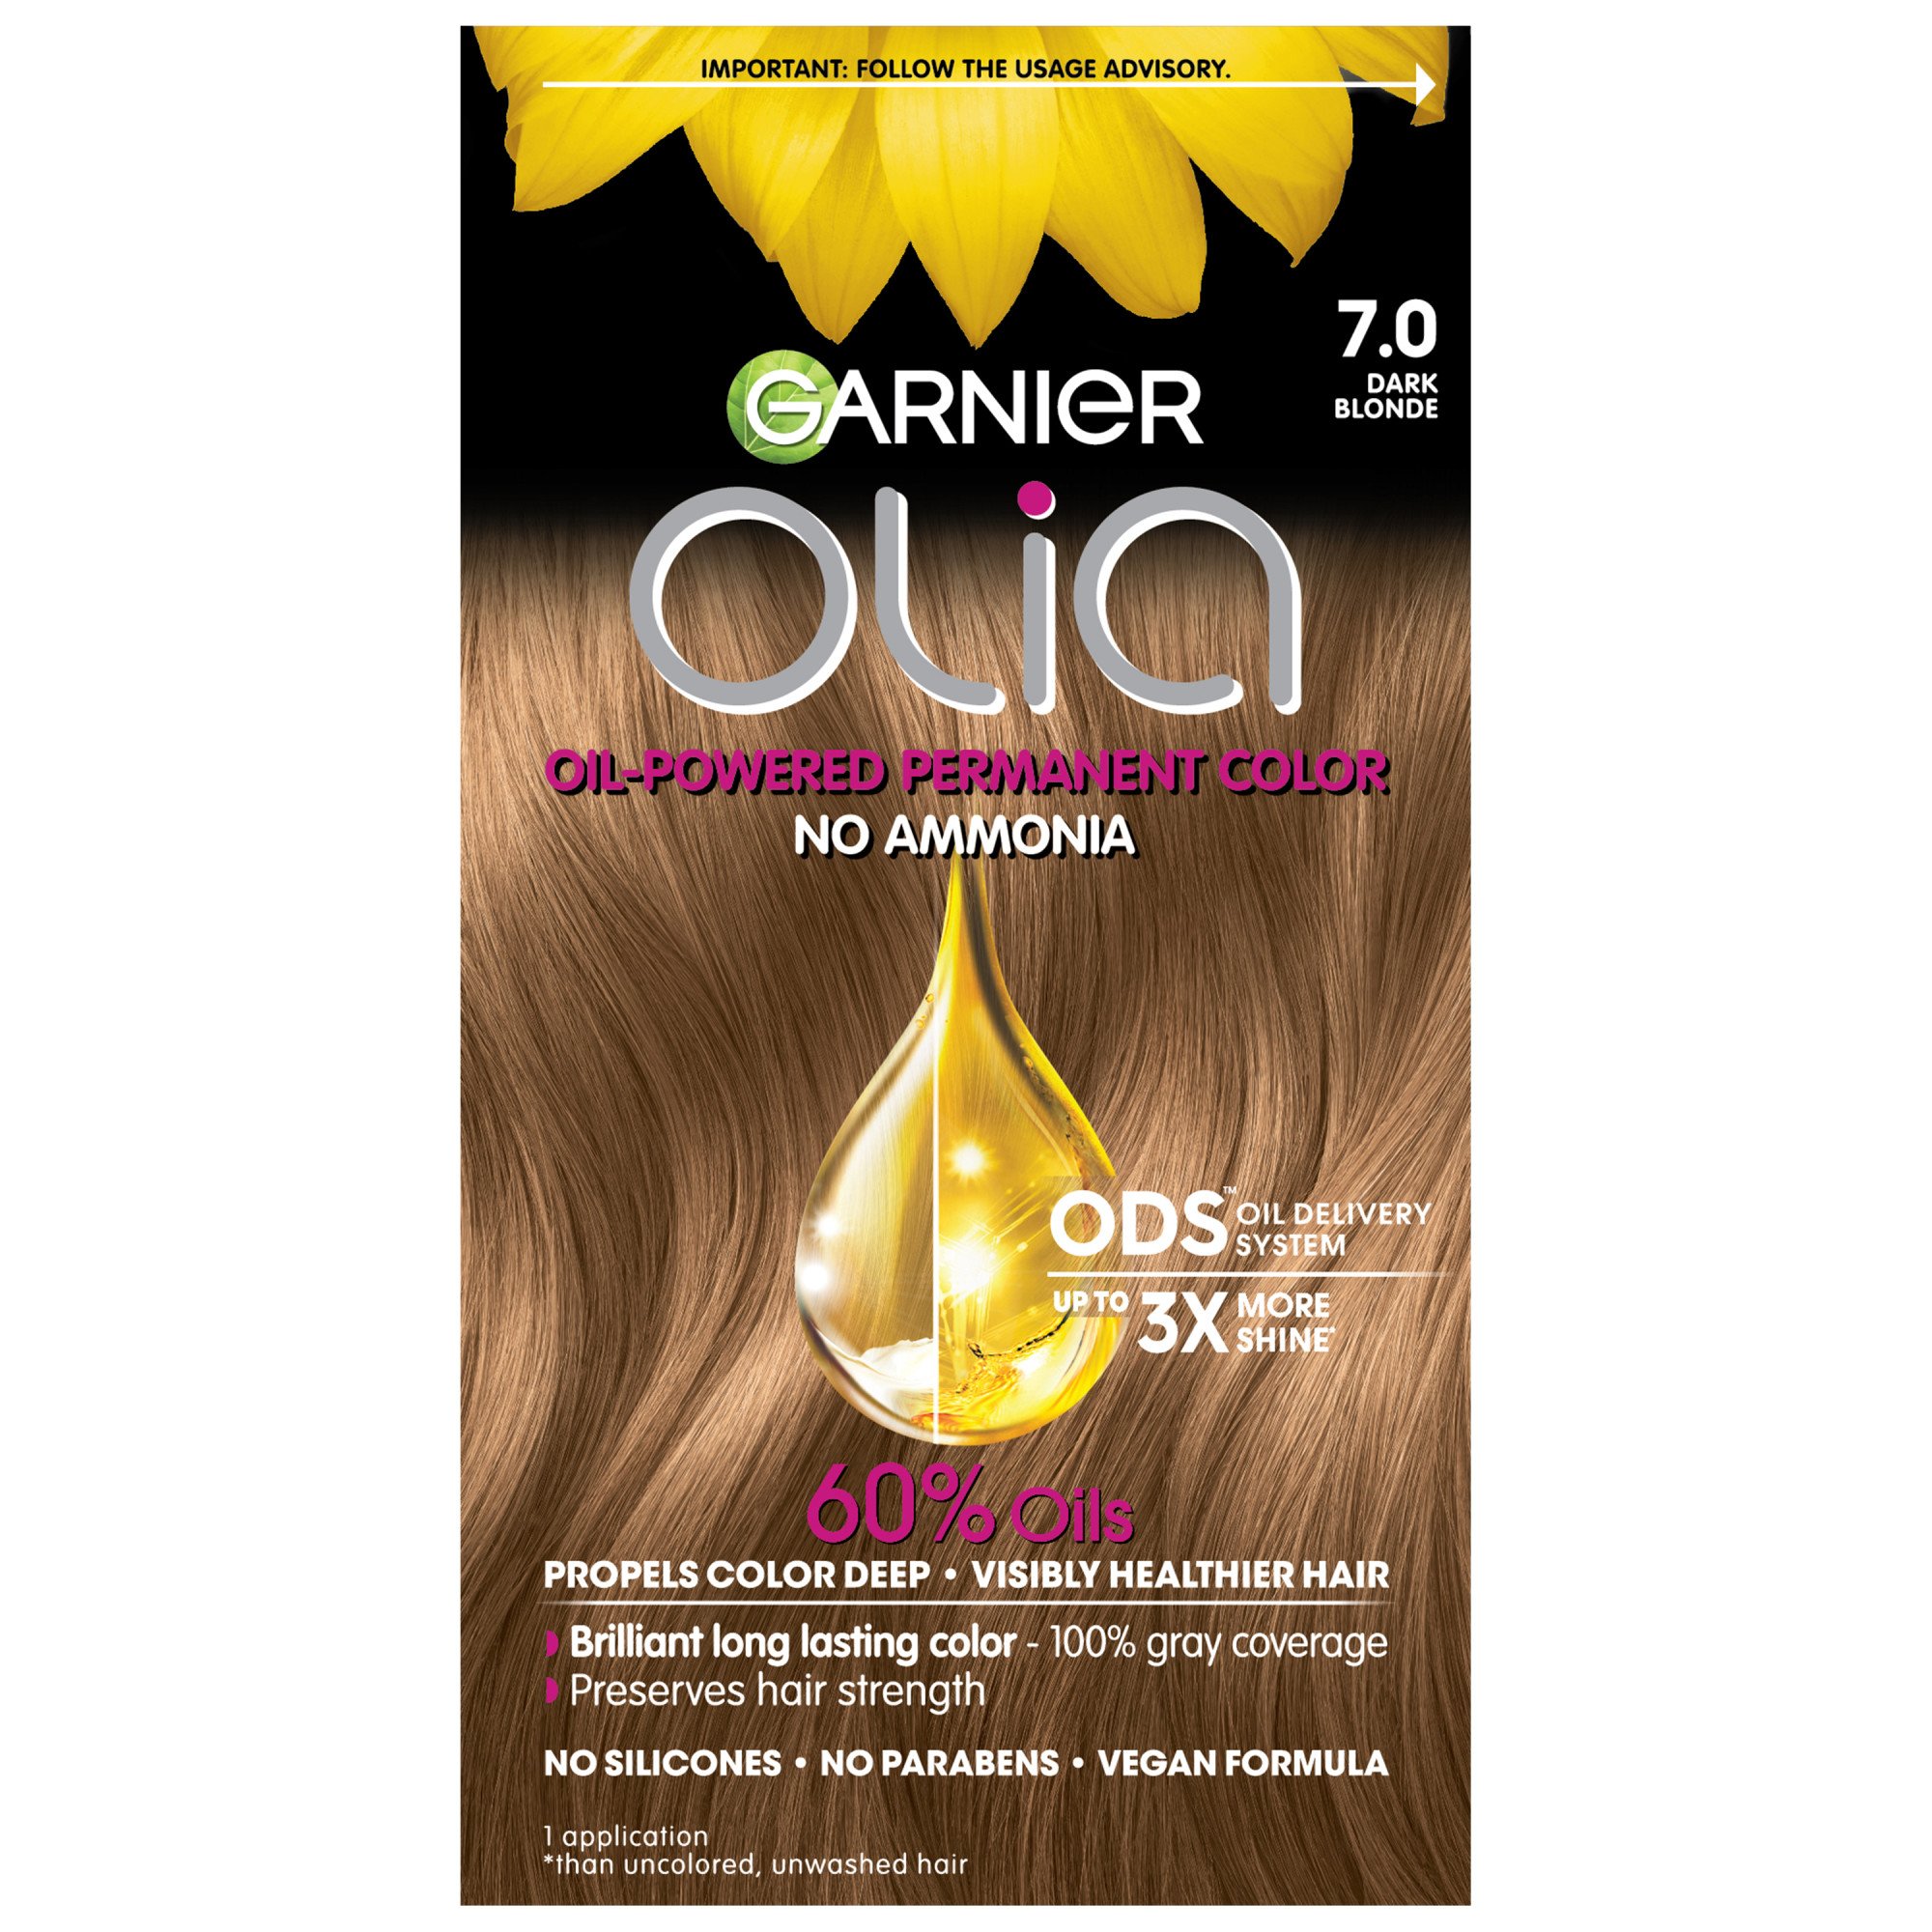 Garnier Olia Oil Powered Ammonia Free Permanent Hair Color  Dark Blonde  - Shop Hair Color at H-E-B